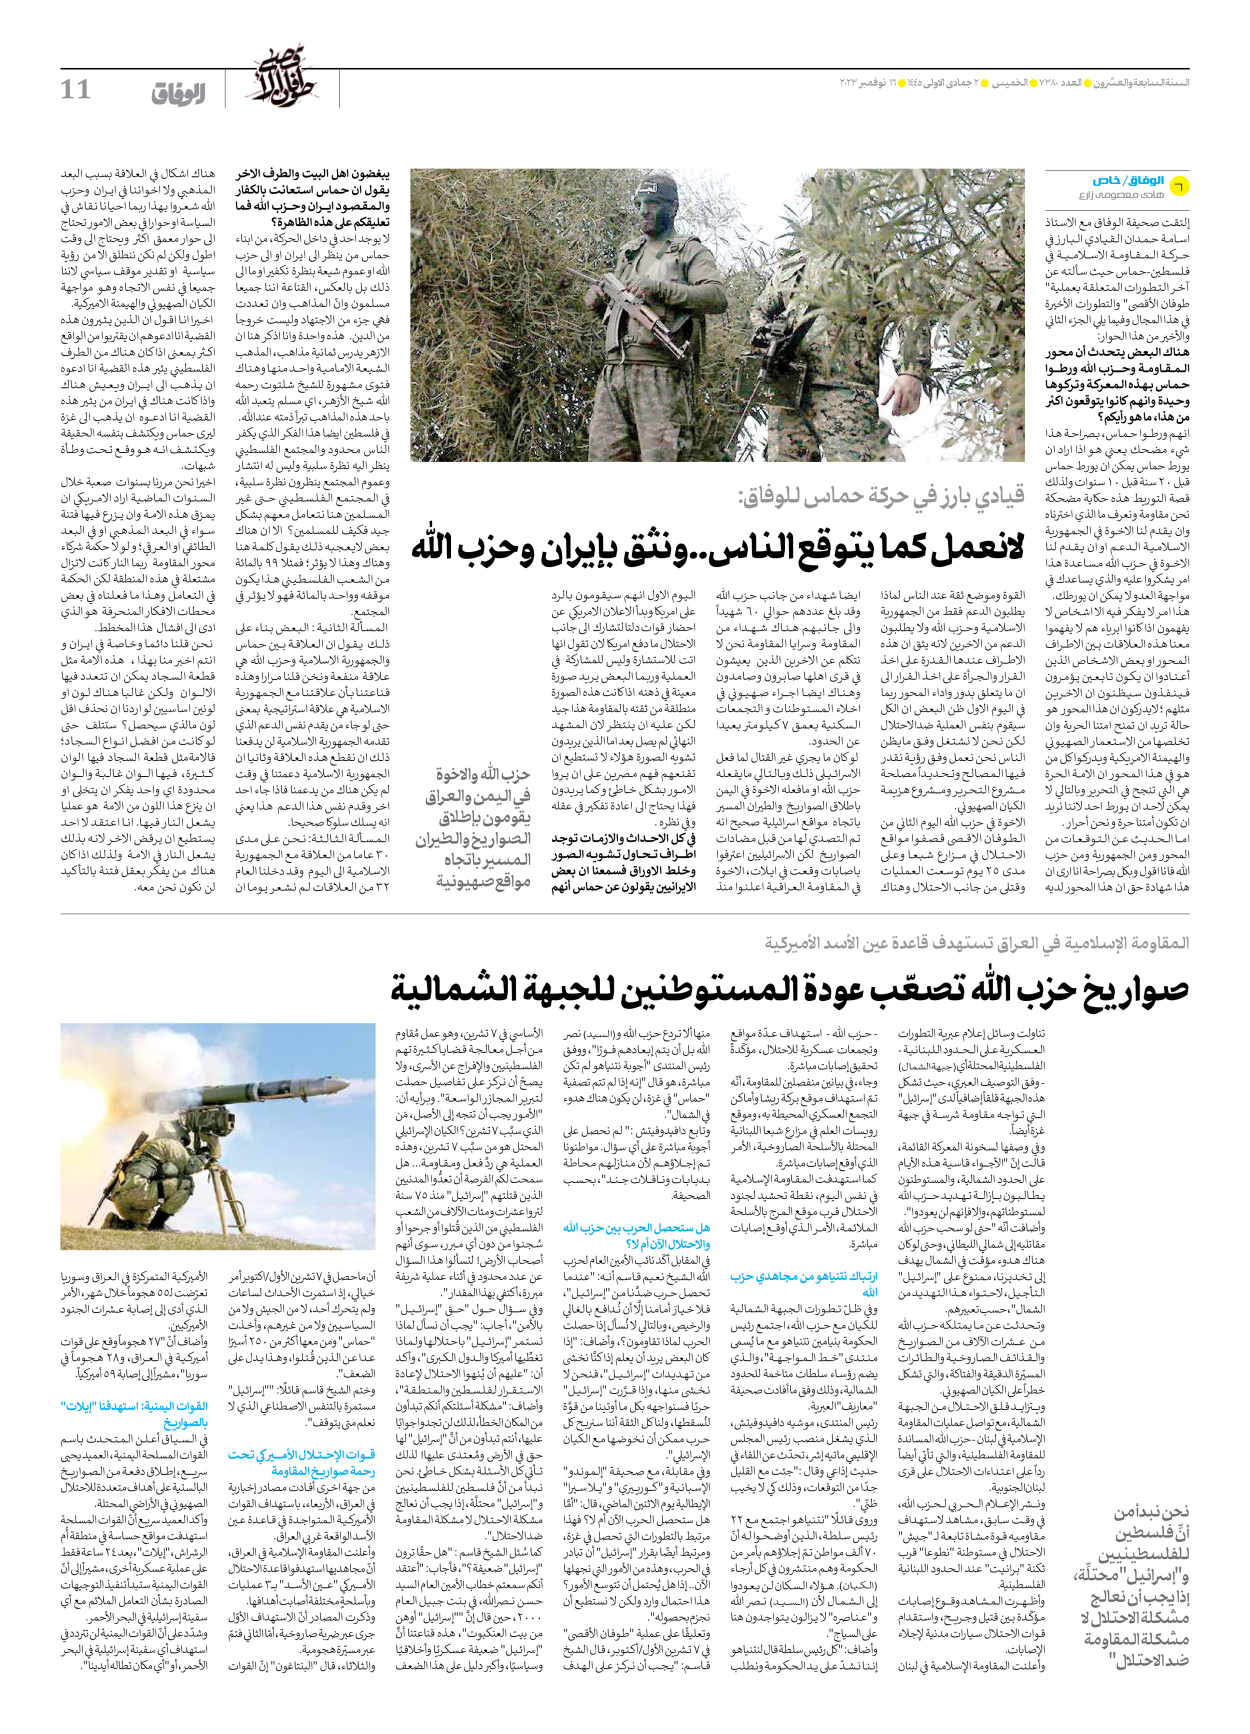 صحیفة ایران الدولیة الوفاق - العدد سبعة آلاف وثلاثمائة وثمانون - ١٦ نوفمبر ٢٠٢٣ - الصفحة ۱۱